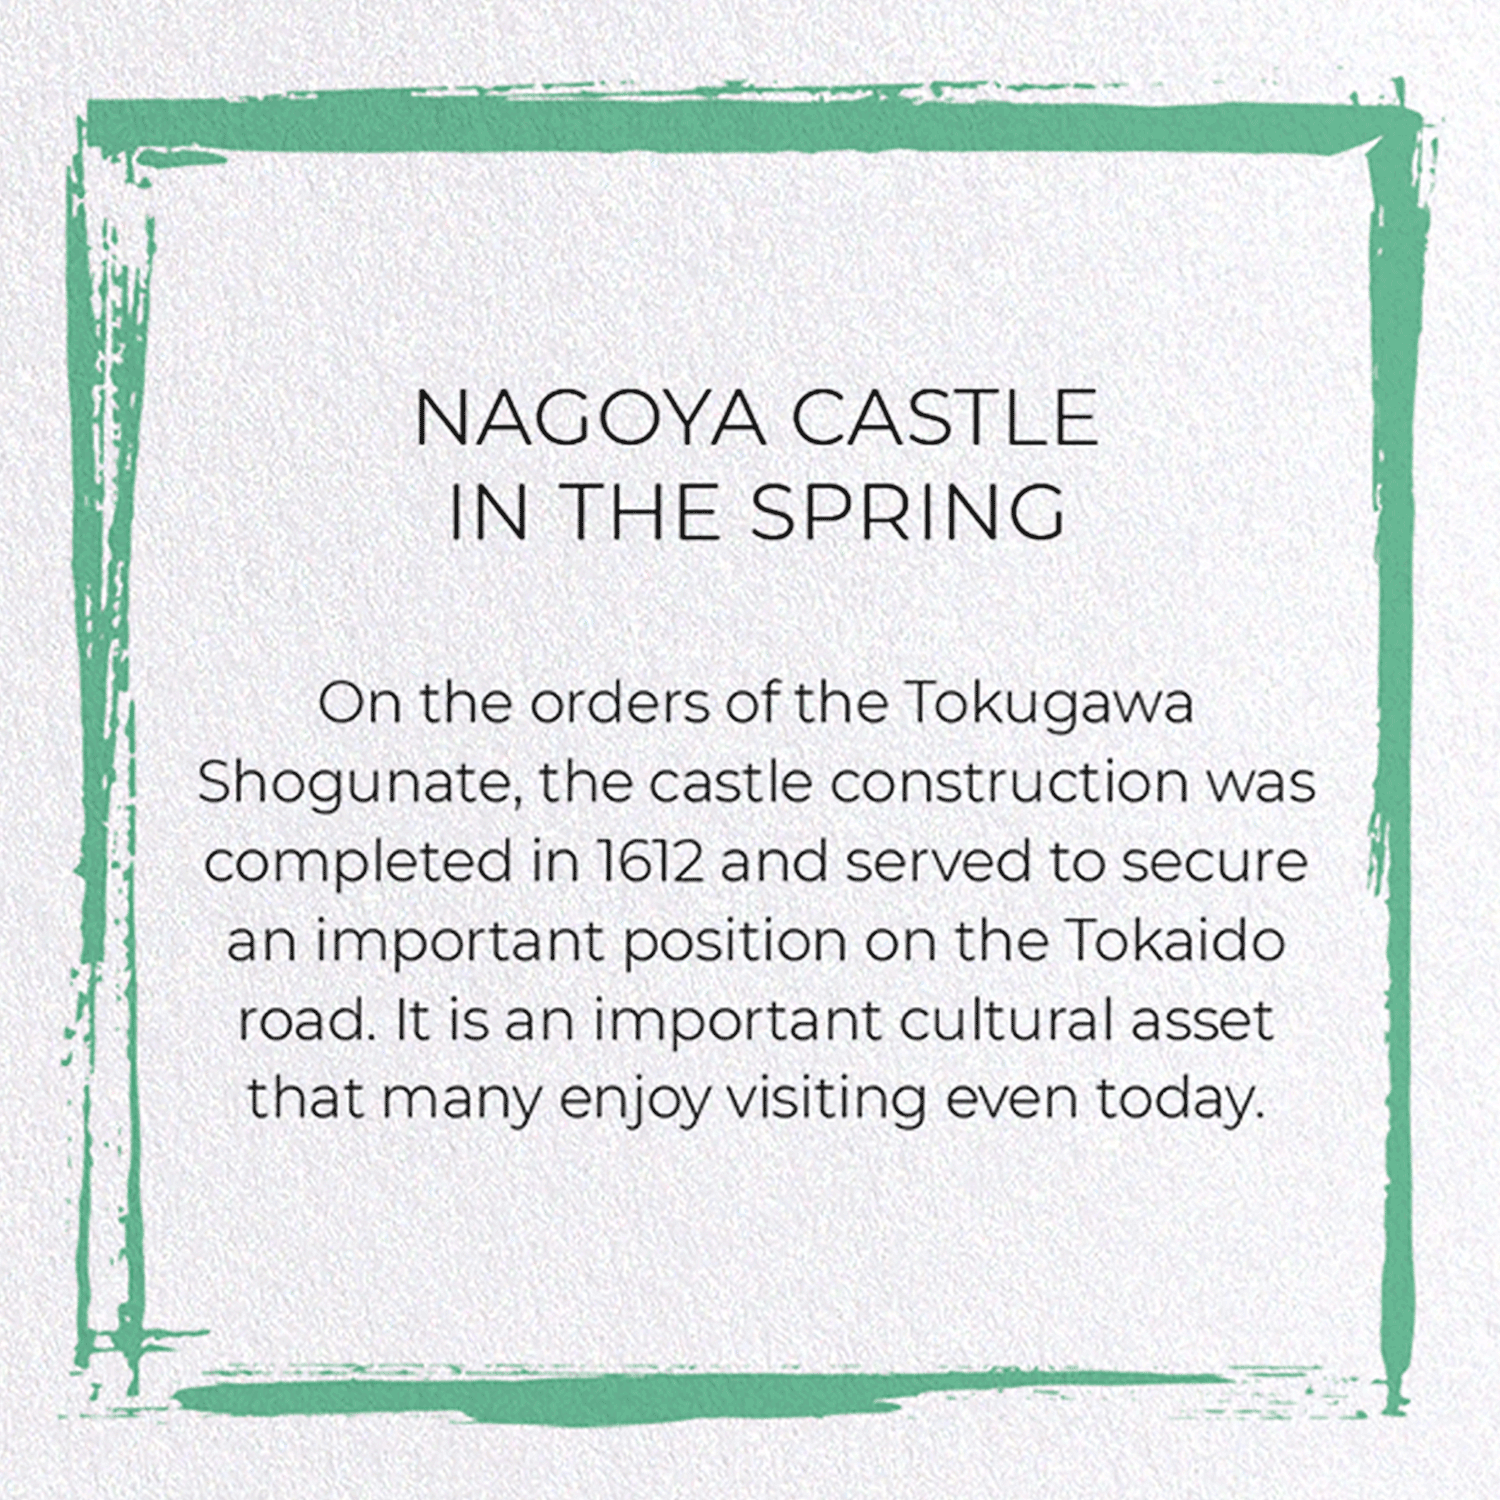 NAGOYA CASTLE IN THE SPRING